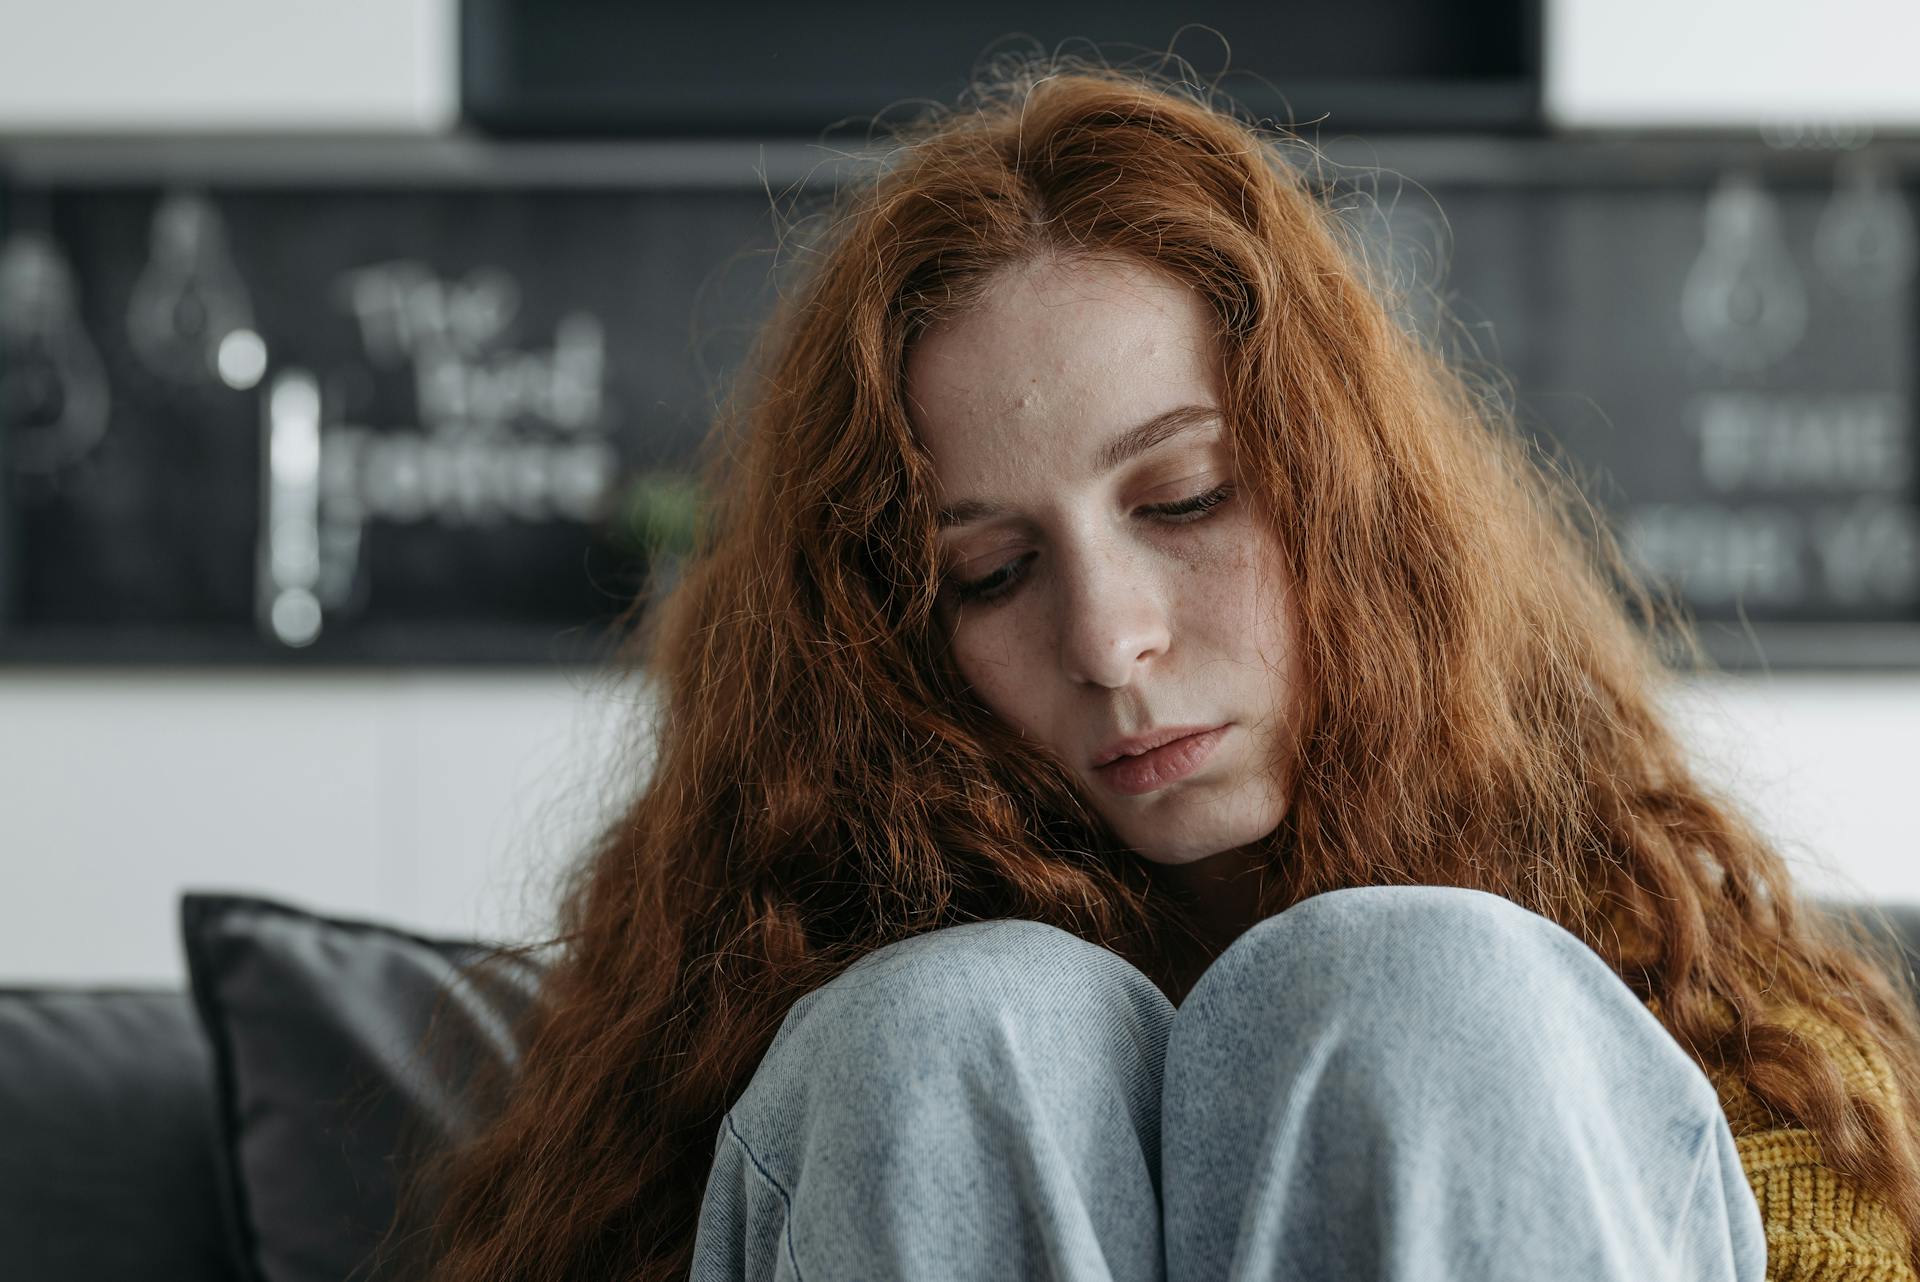 A close-up of a sad woman | Source: Pexels